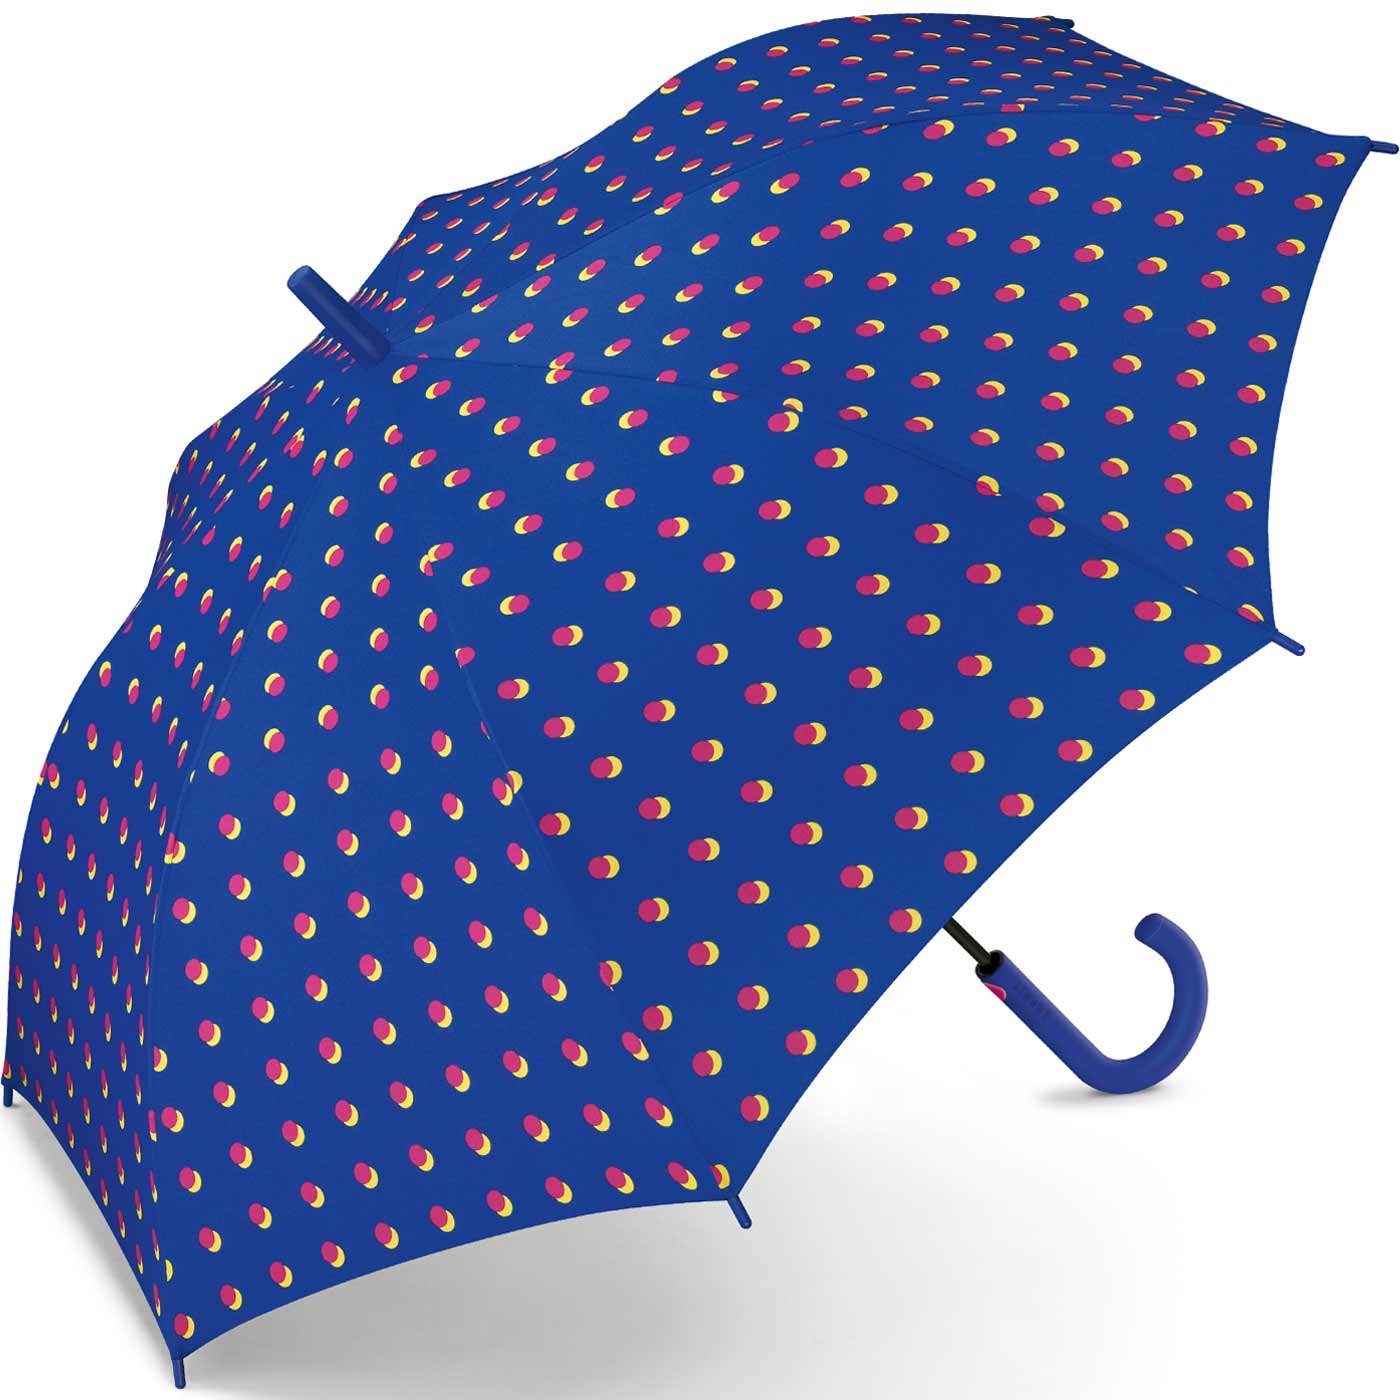 für besondere Esprit das Langregenschirm als Design mit Regenschirm großer Auf-Automatik, Eyecatcher Damen